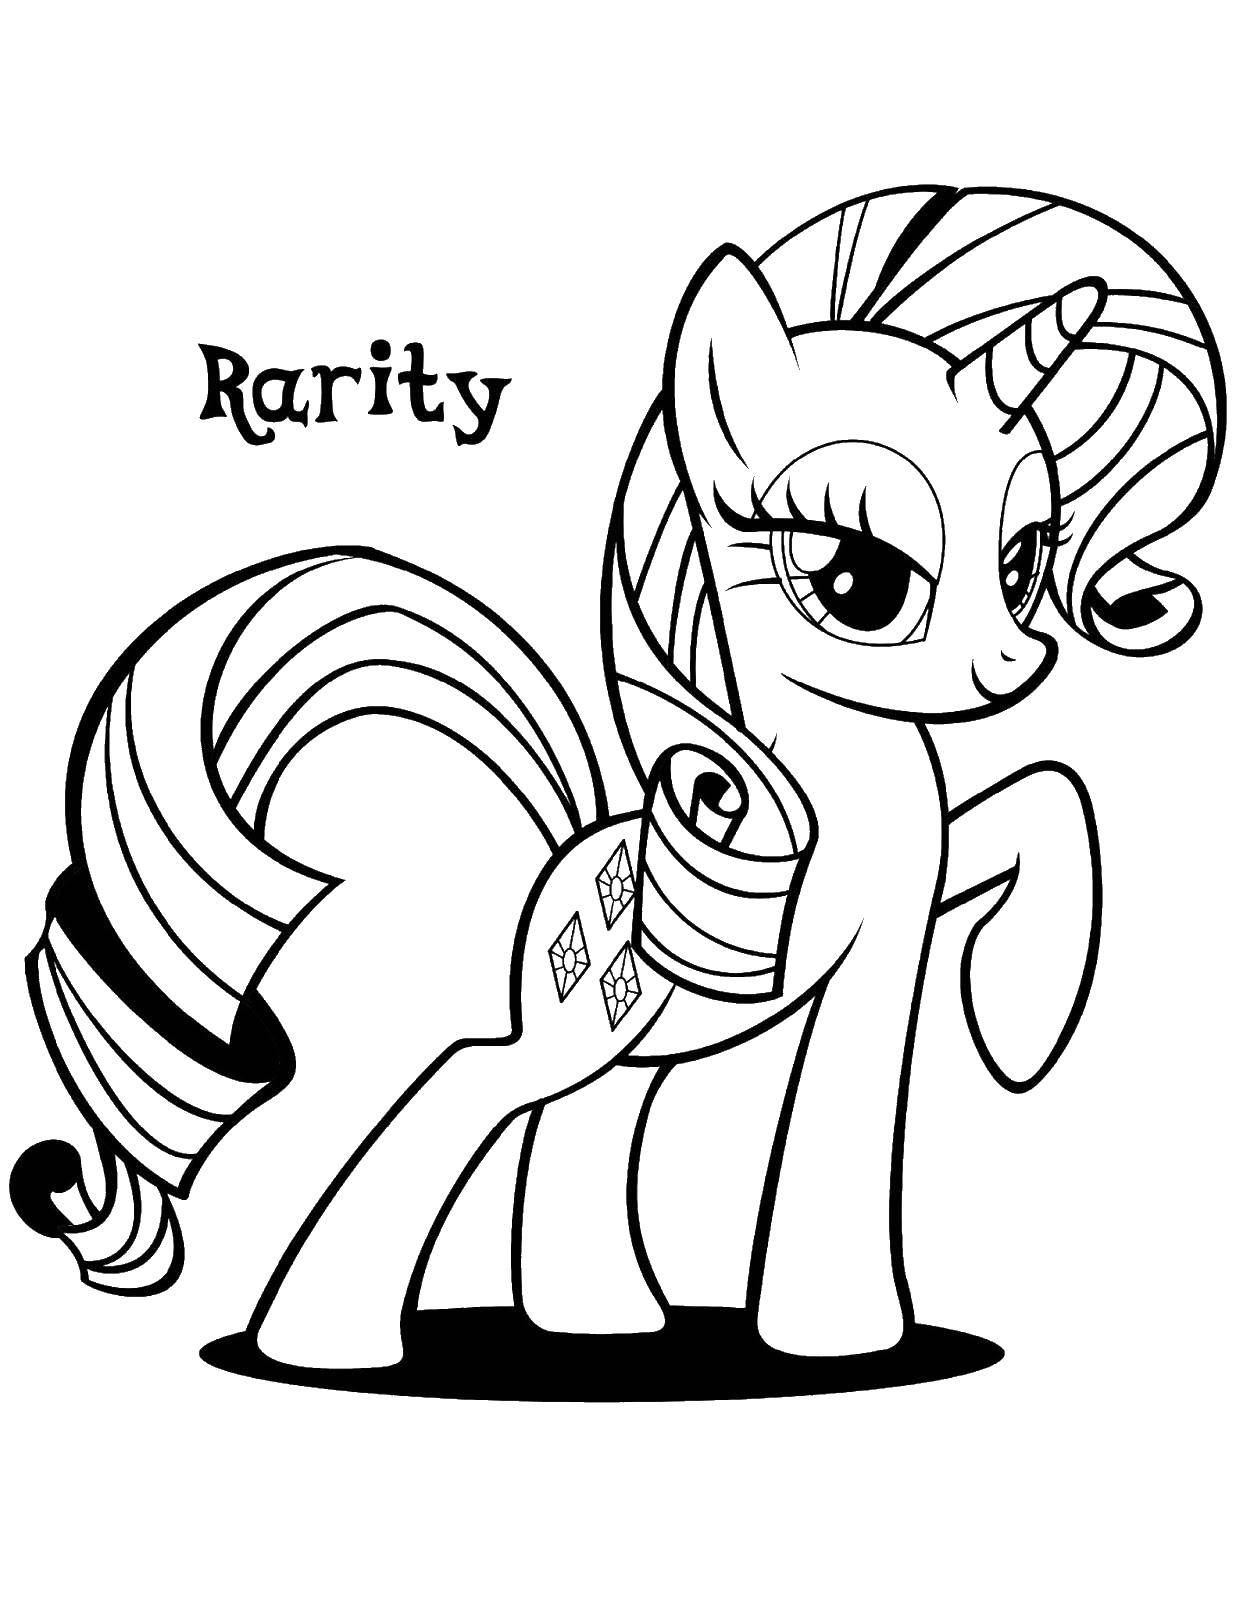 Опис: розмальовки  Рэрити. Категорія: мій маленький поні. Теги:  мій маленький поні, конячки.